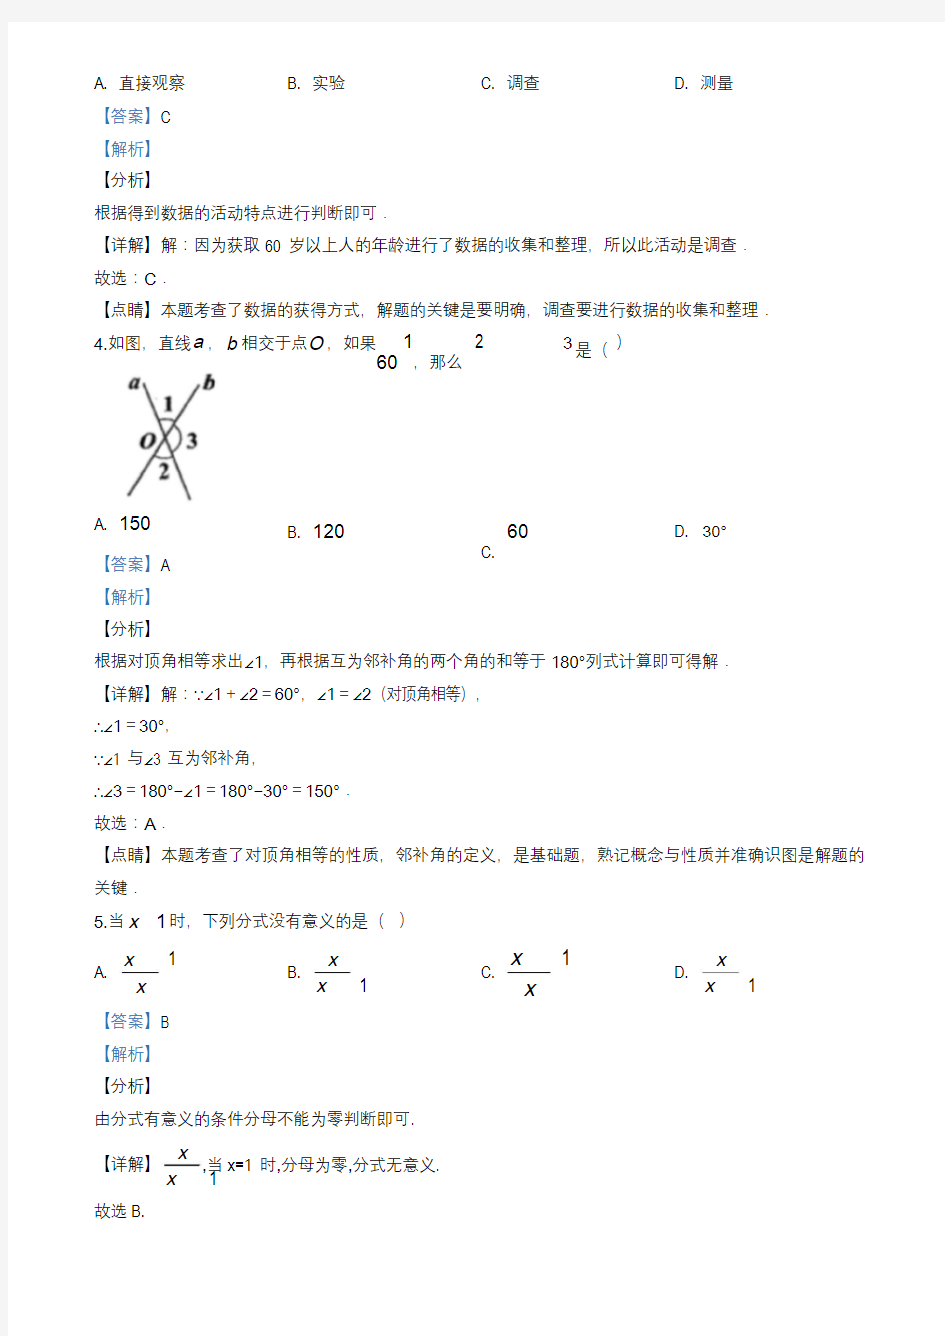 2020年贵州省安顺市数学试卷(教师版)